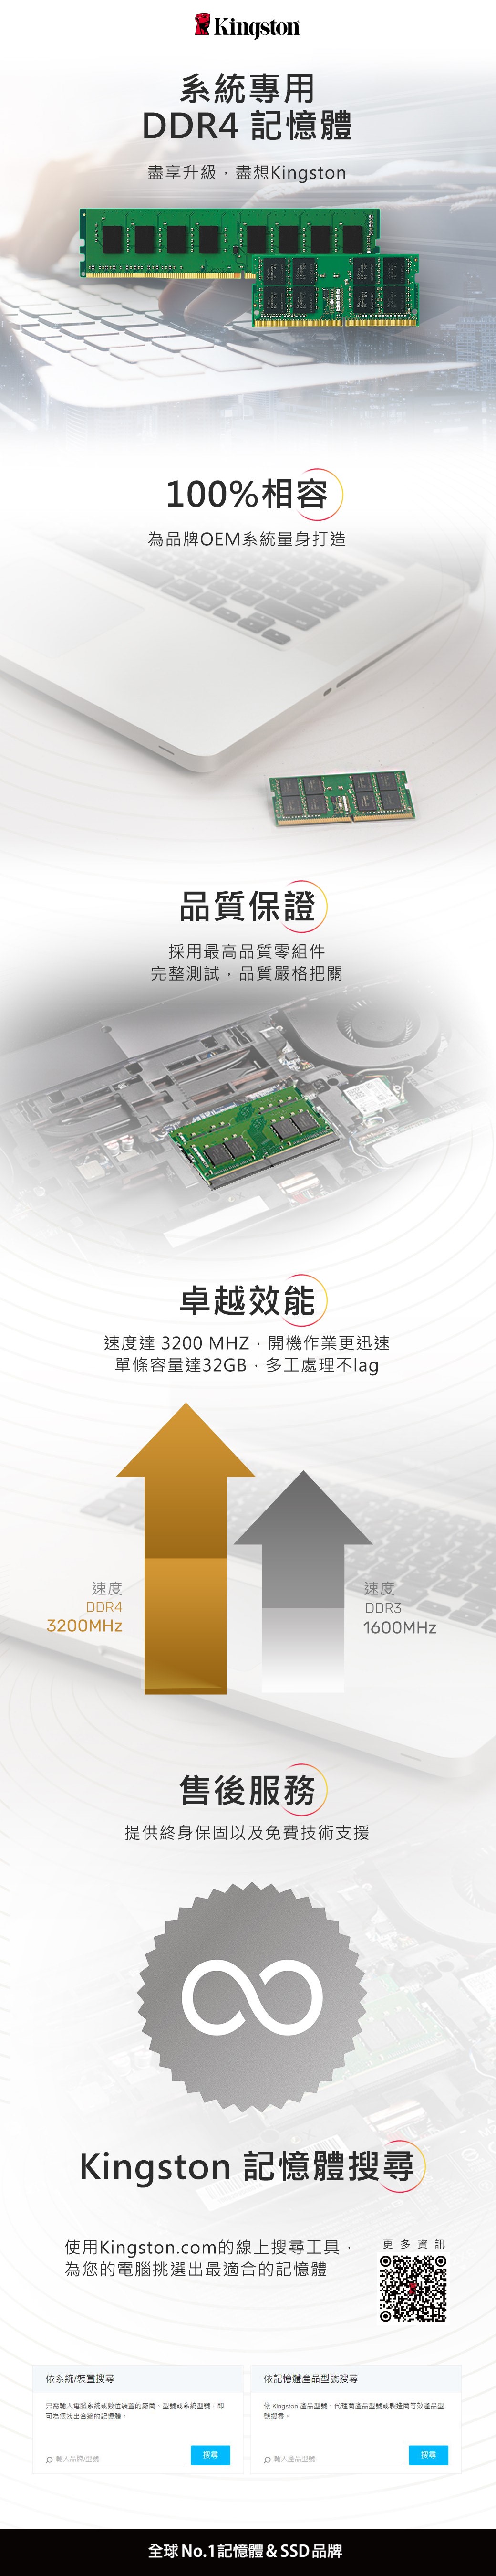 速度DDR43200MHzKingston系統專用DDR4 記憶體盡享升級盡想Kingston100%相容為品牌EM系統量身打造依系統/裝置搜尋O 輸入品牌/型號品質保證採用最高品質零組件完整測試,品質嚴格把關卓越效能速度達 3200 MHZ,開機作業更迅速單條容量達32GB,多工處理不售後服務提供終身保固以及免費技術支援只需輸入電腦系統或數位裝置的廠商、型號或系統型號,即可為您找出合適的記憶體。Kingston 記憶體搜尋搜尋使用Kingston.com的線上搜尋工具, 更多資訊為您的電腦挑選出最適合的記憶體依記憶體產品型號搜尋速度DDR31600MHz輸入產品型號全球 No.1記憶體 & SSD 品牌依 Kingston 產品型號、代理商產品型號或製造商等效產品型號搜尋。搜尋